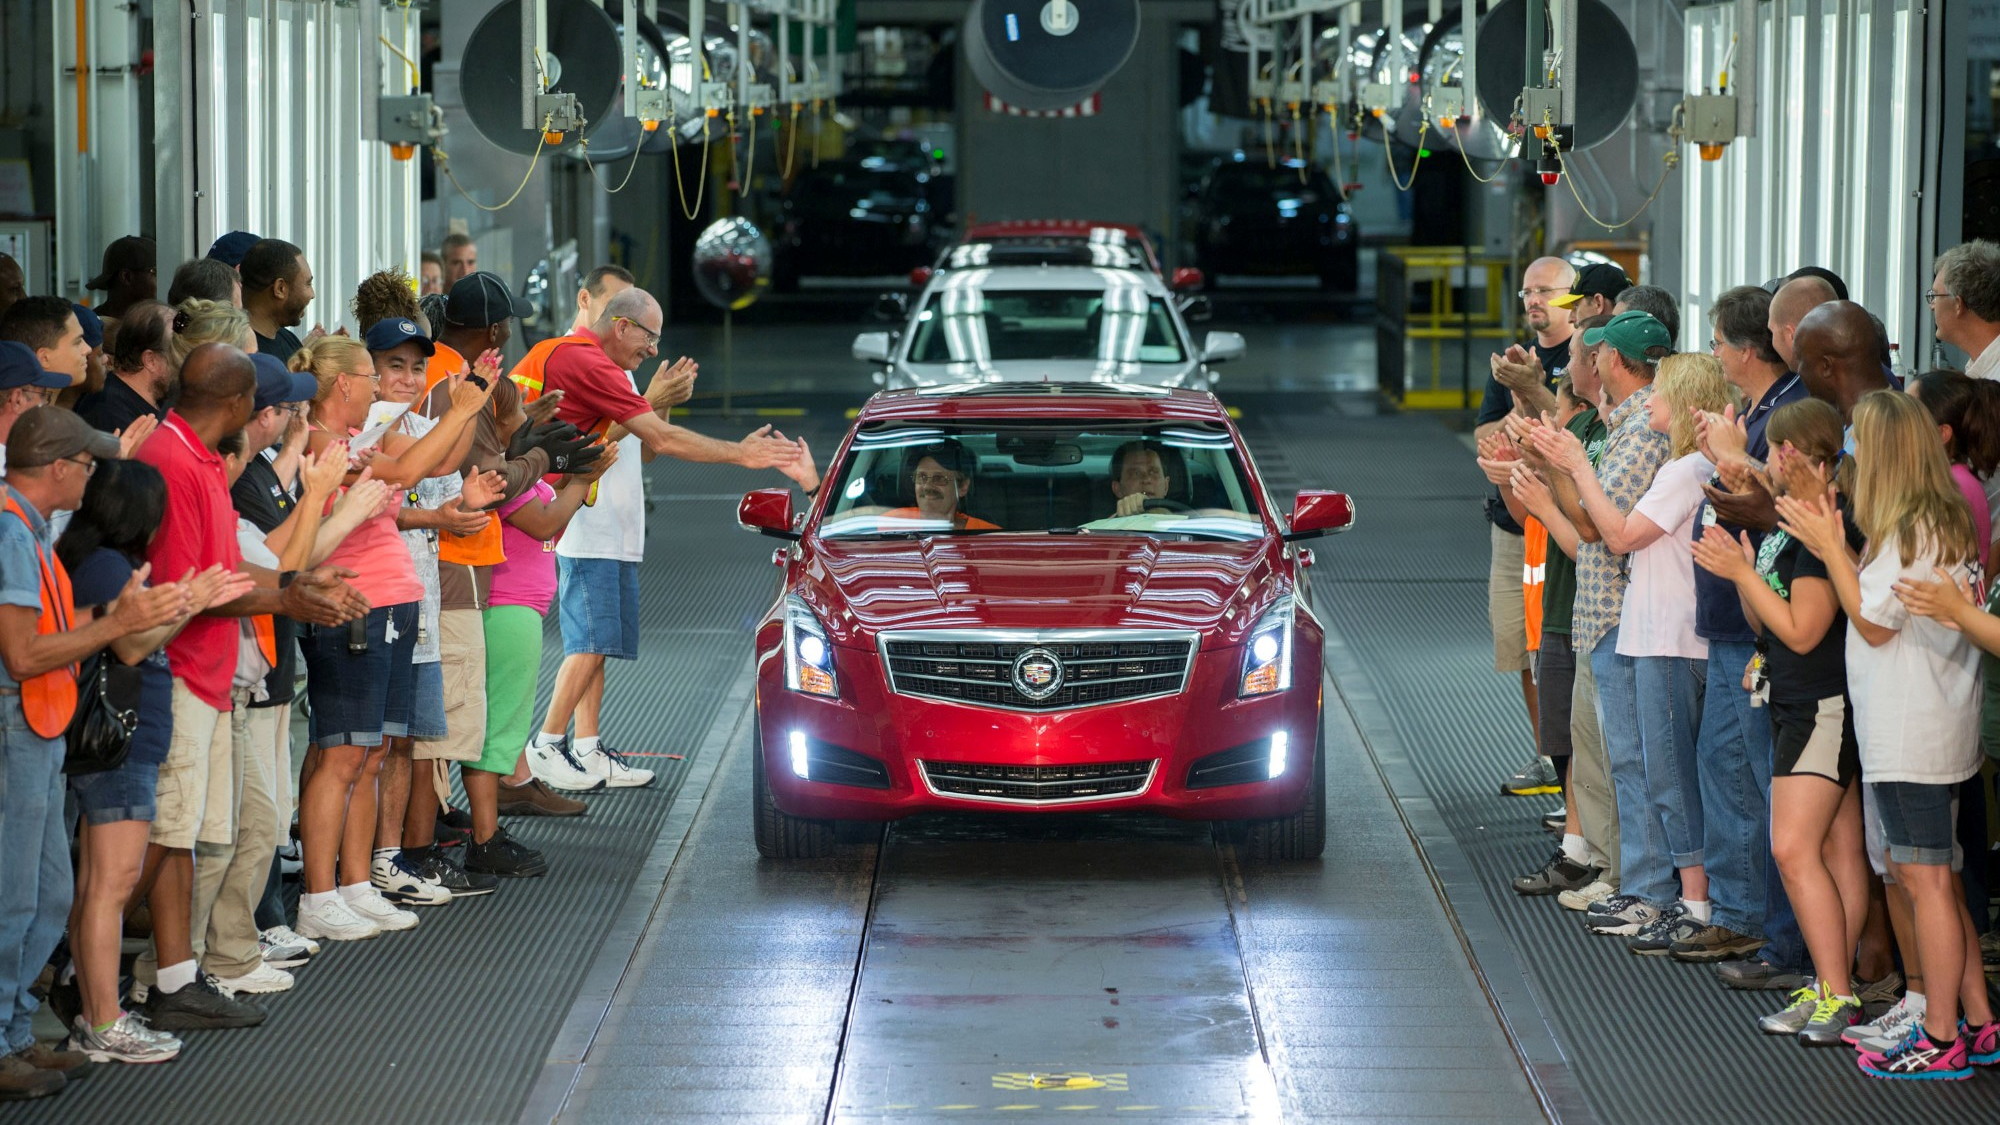 2013 Cadillac ATS sedan begins production at the Lansing Grand River assembly plant